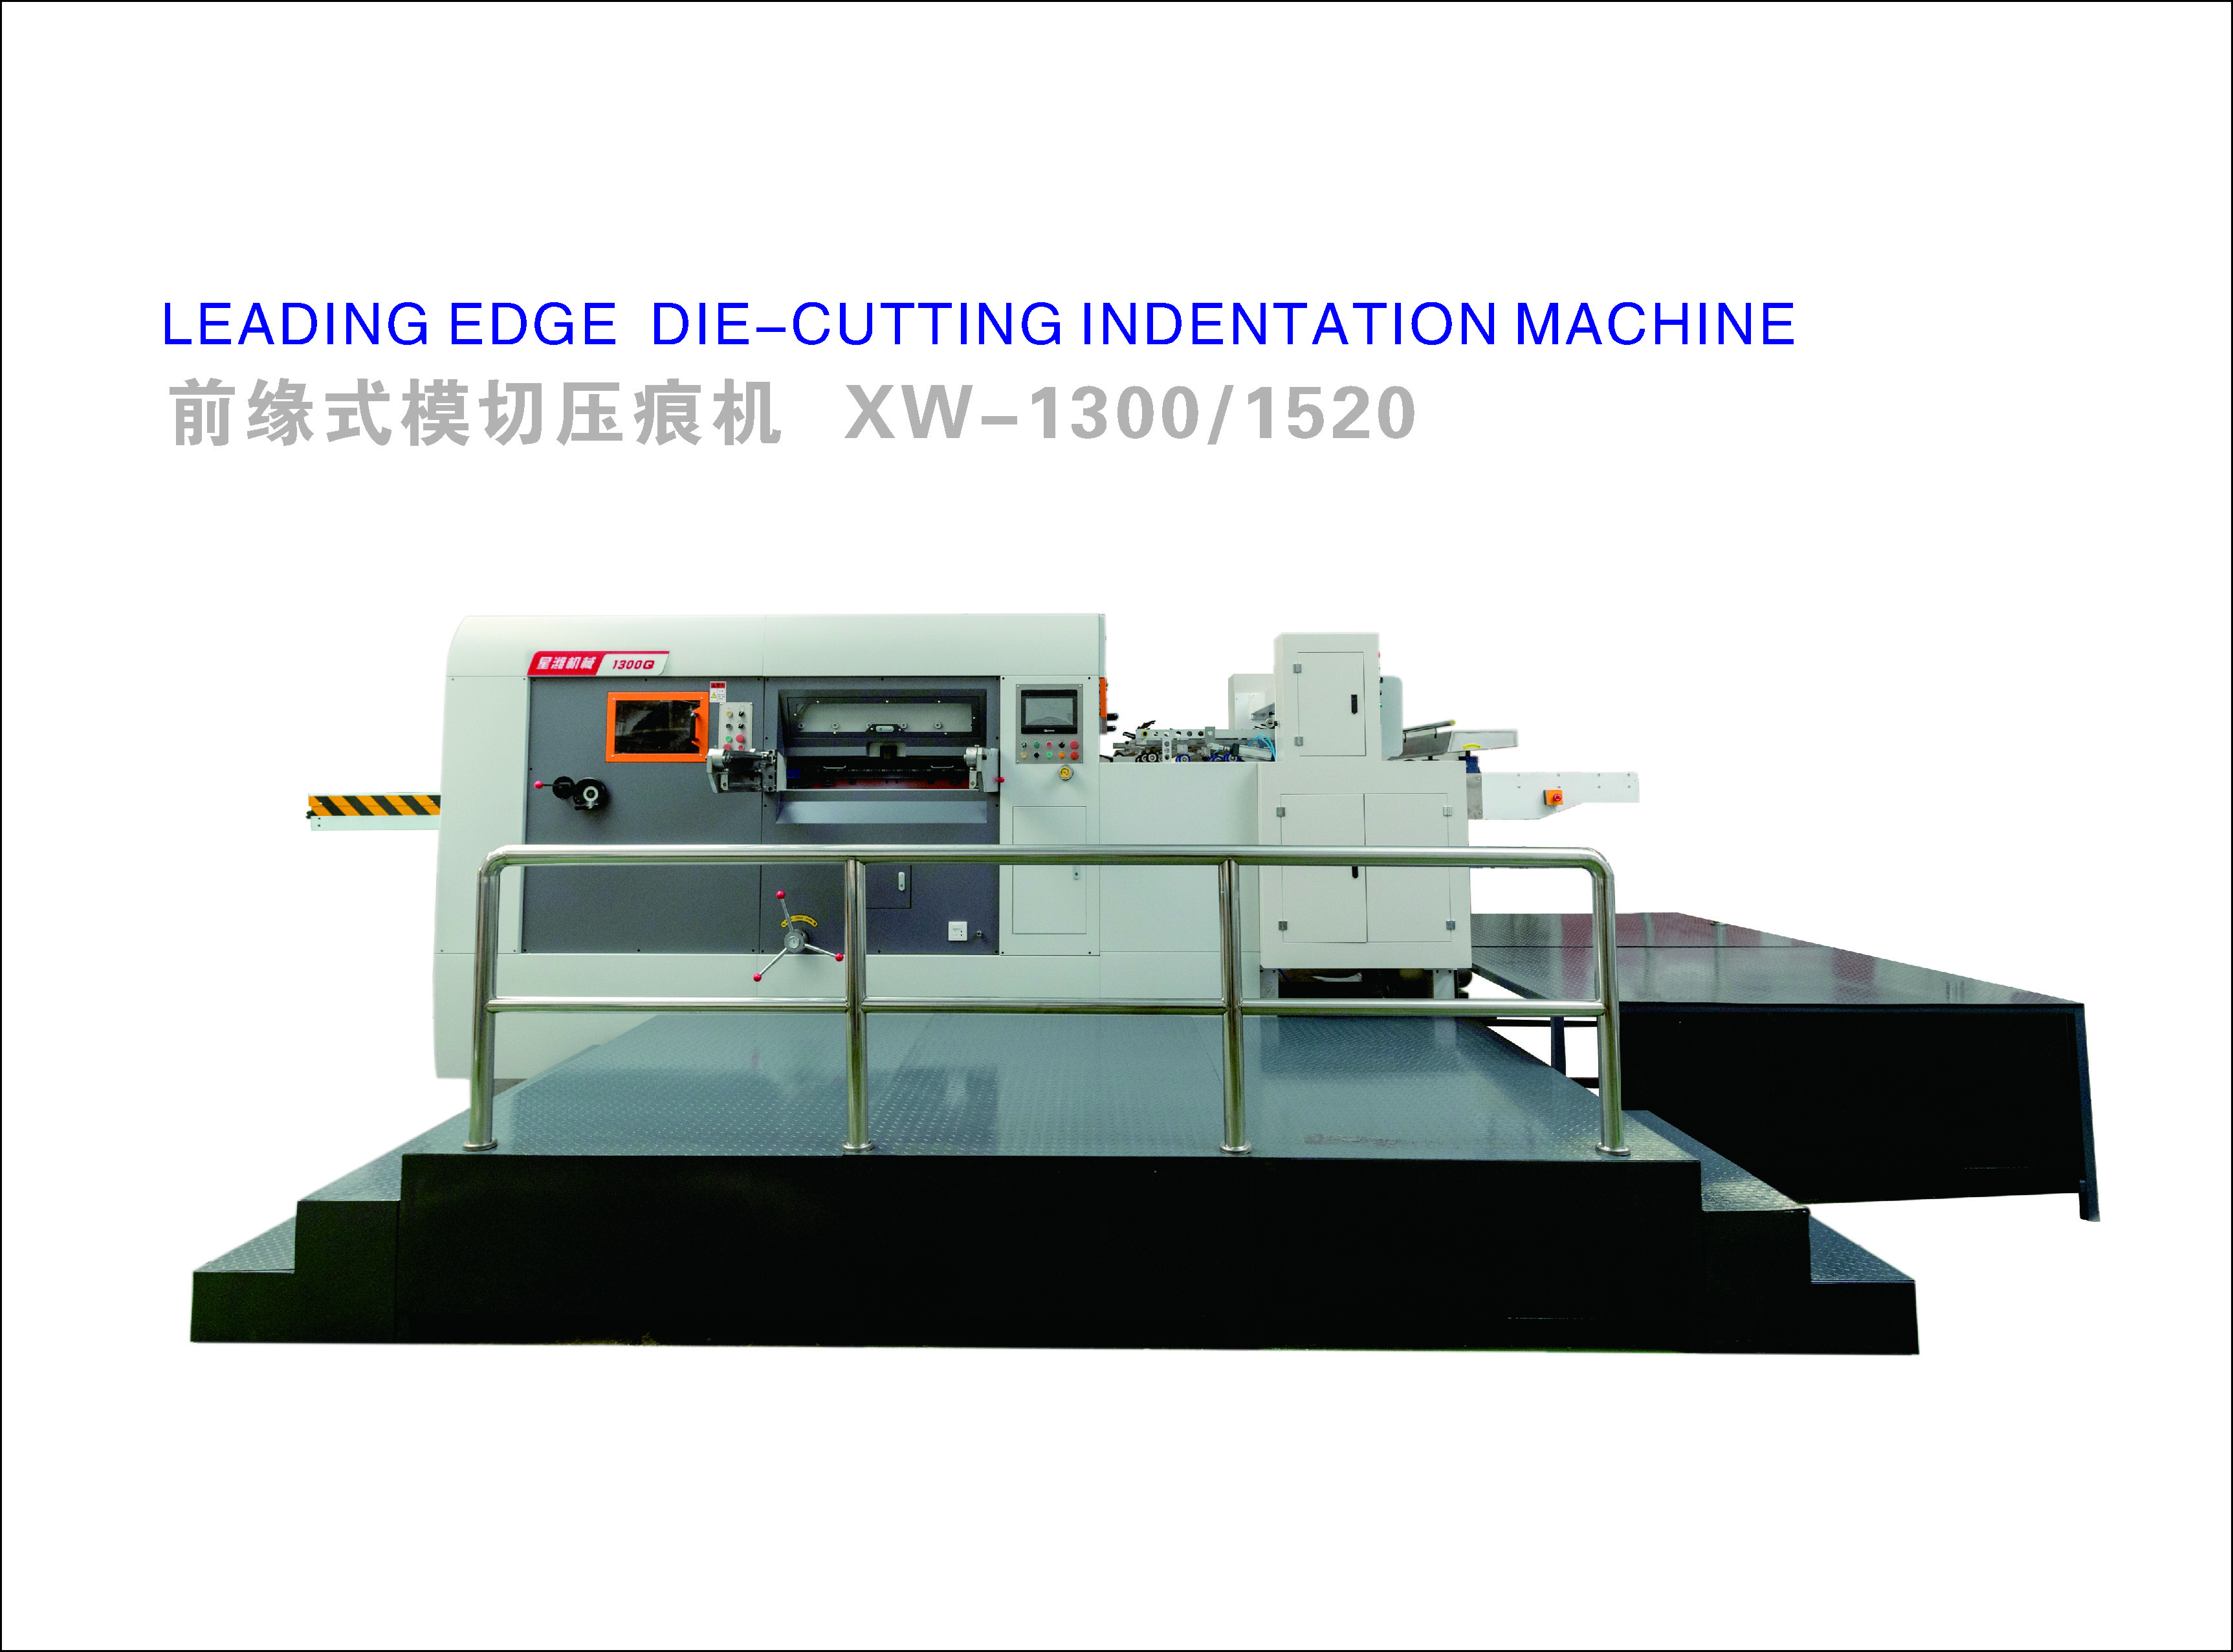 Leading edge-cutting indentation machine